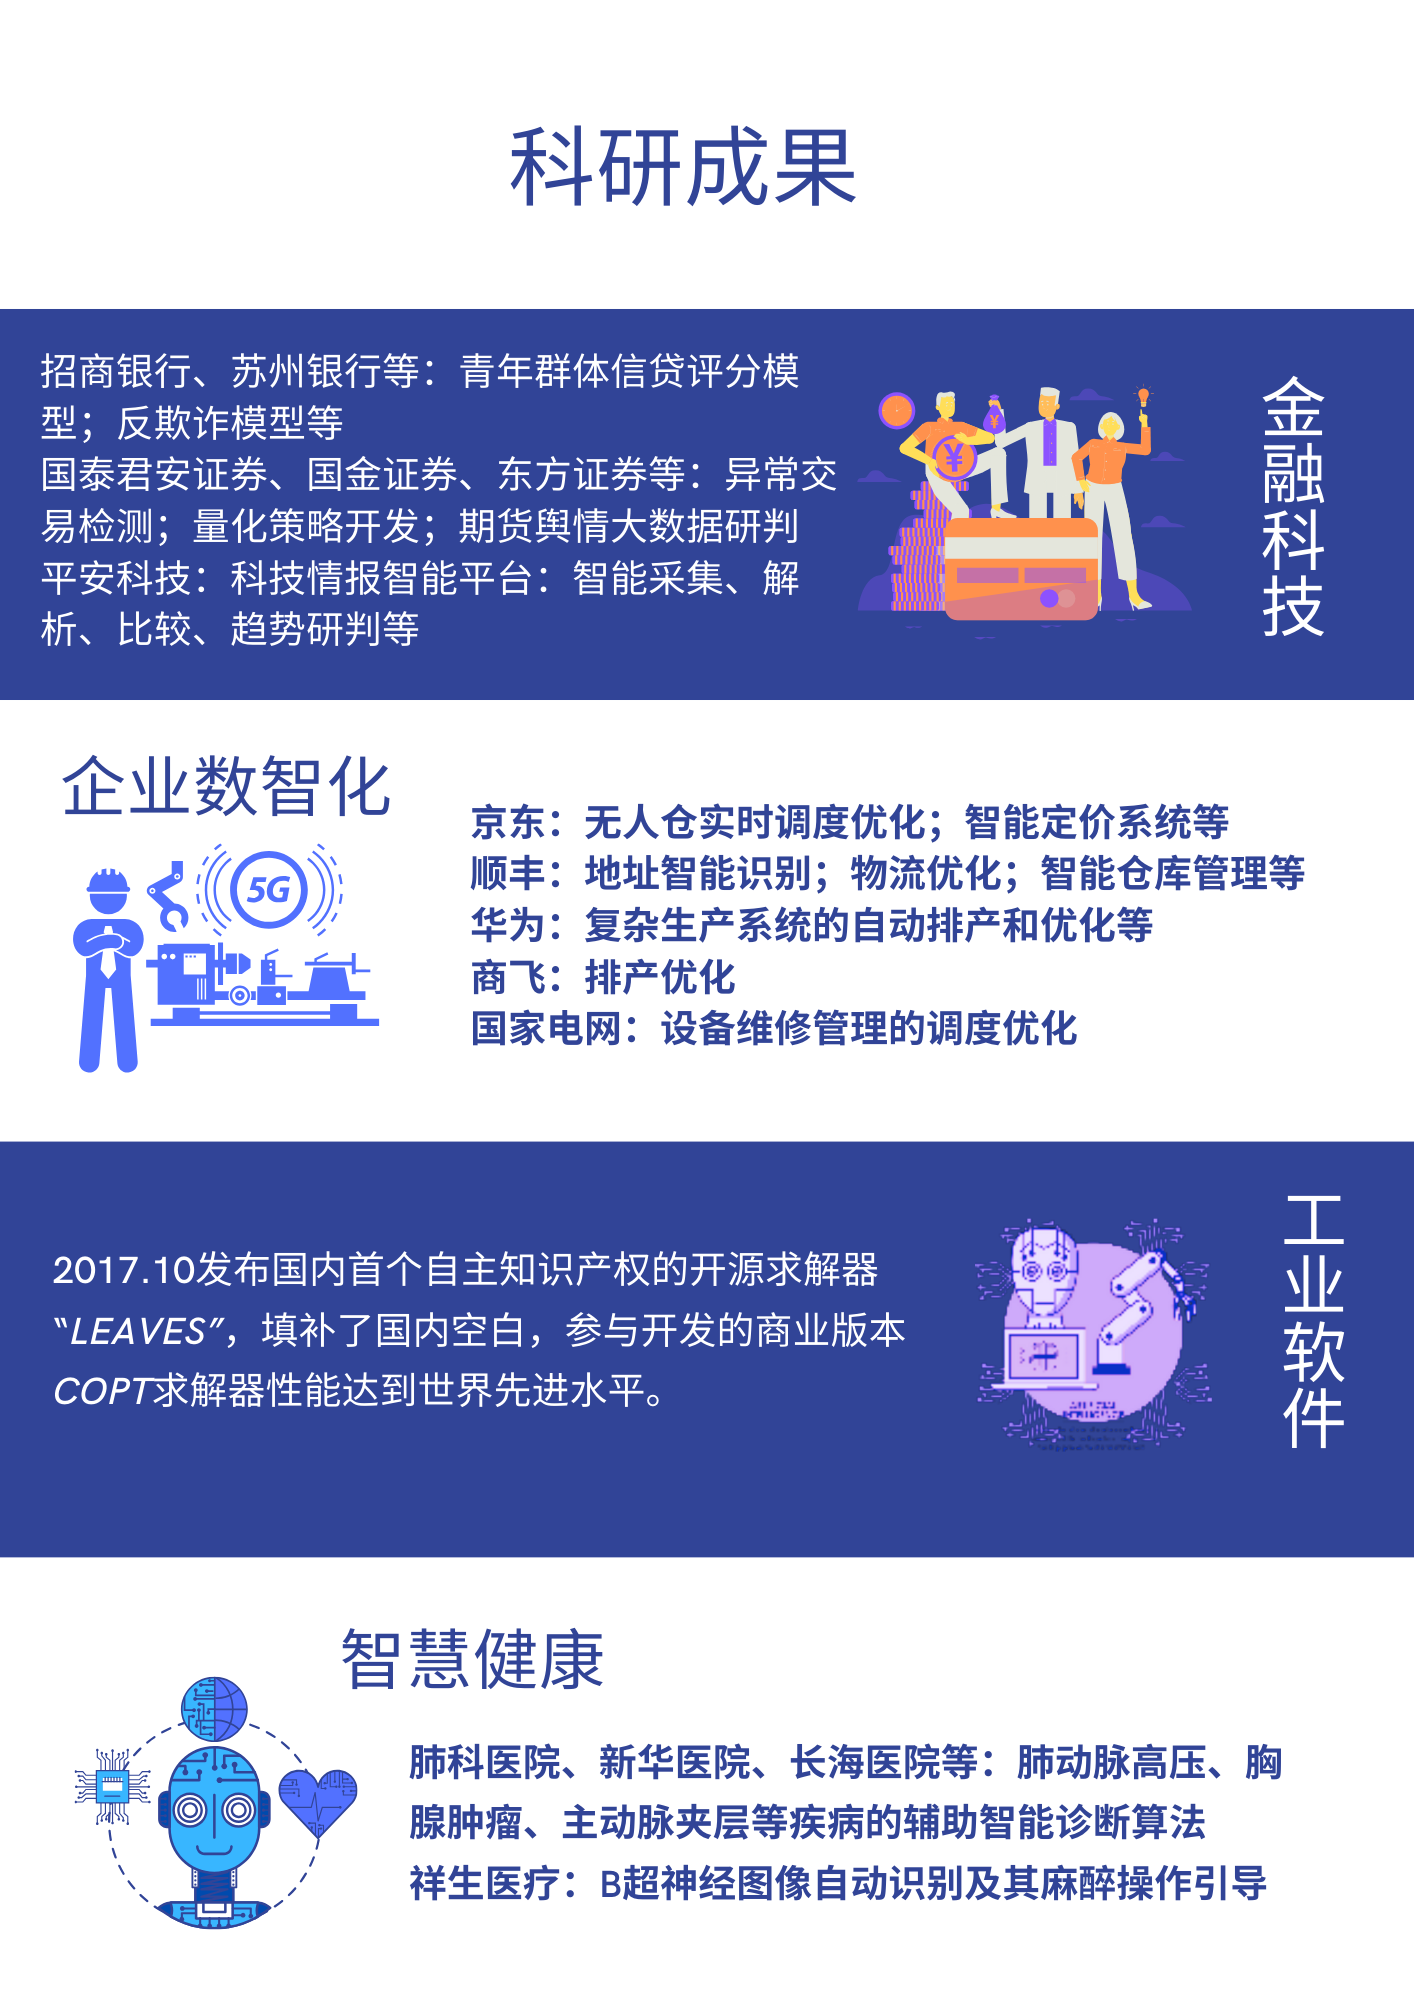 上海财经大学2025年工程管理硕士(MEM)(非全日制)招生简介